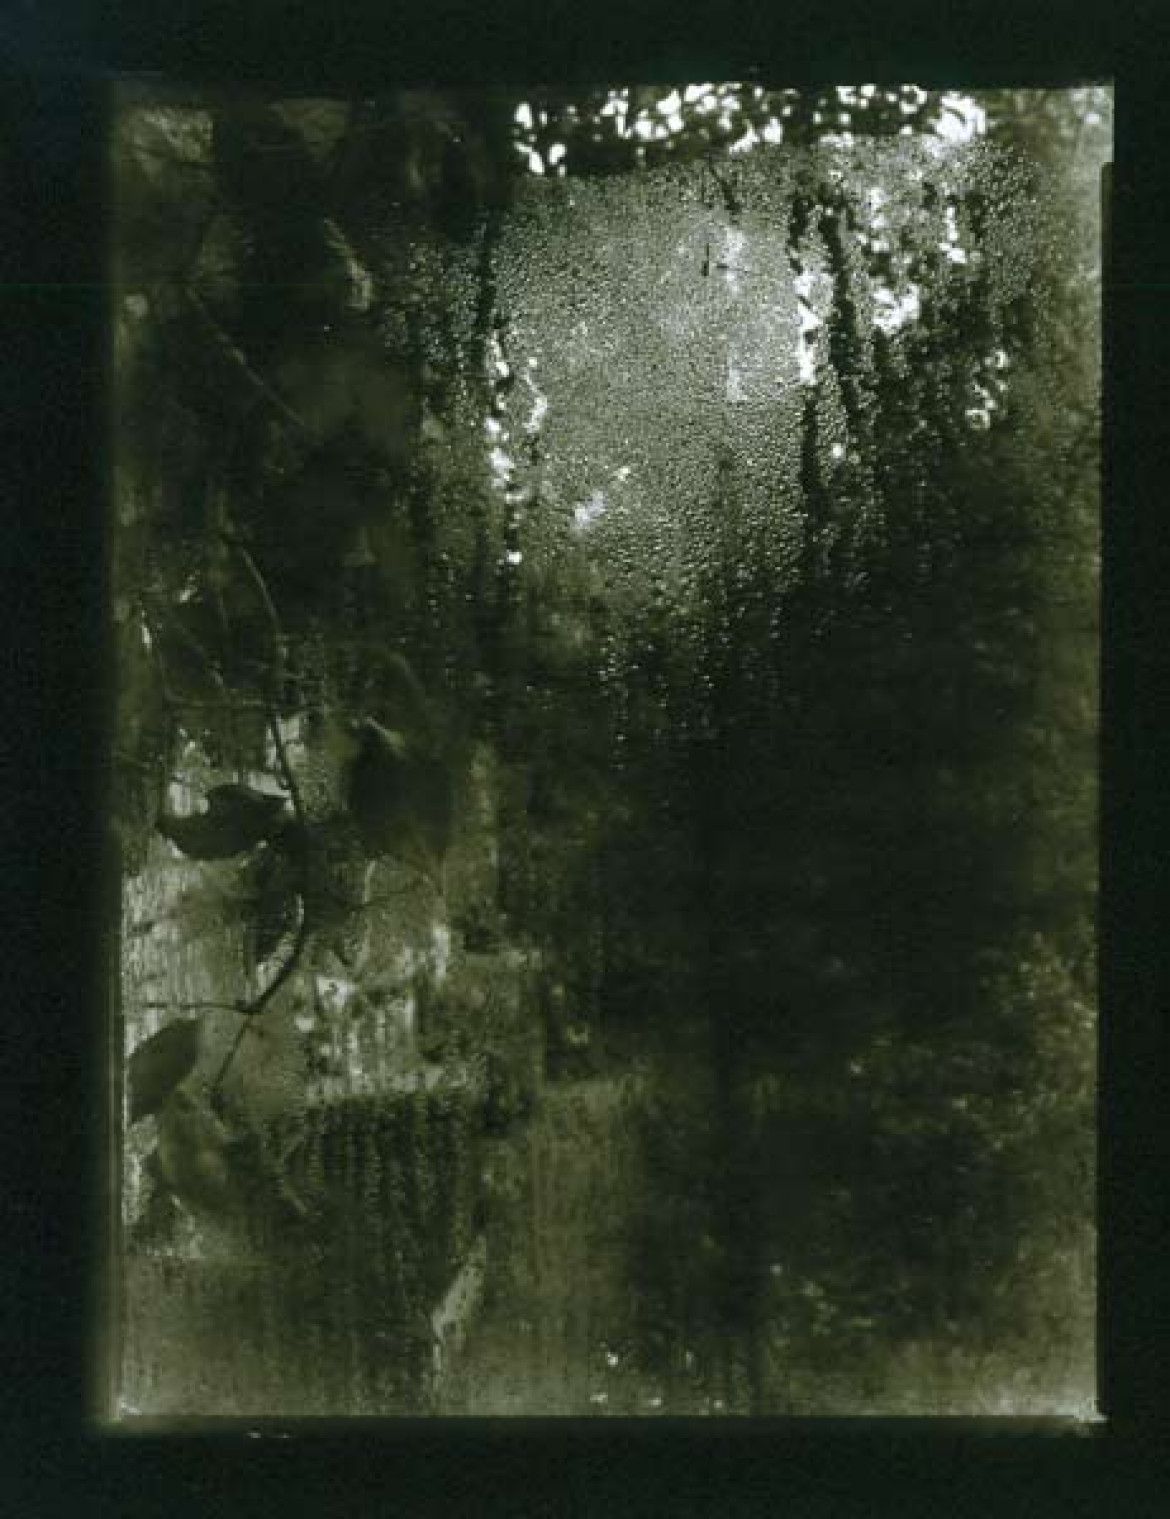 fot. Josef Sudek "Okno mojego atelier", 1940-54